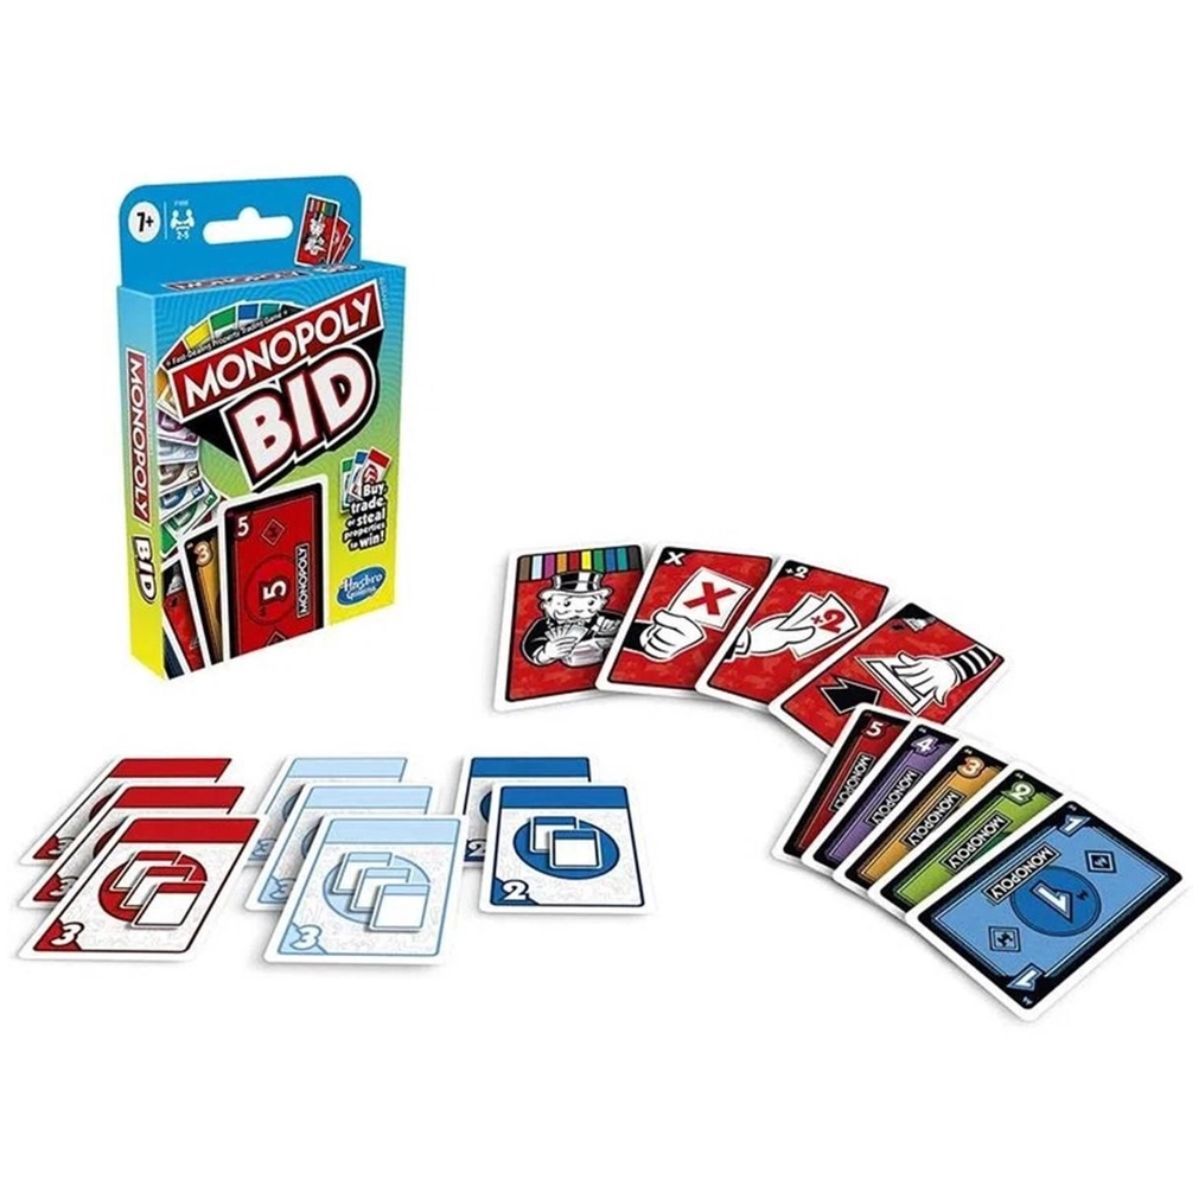 jogo-de-cartas-monopoly-bid-hasbro-1.jpg